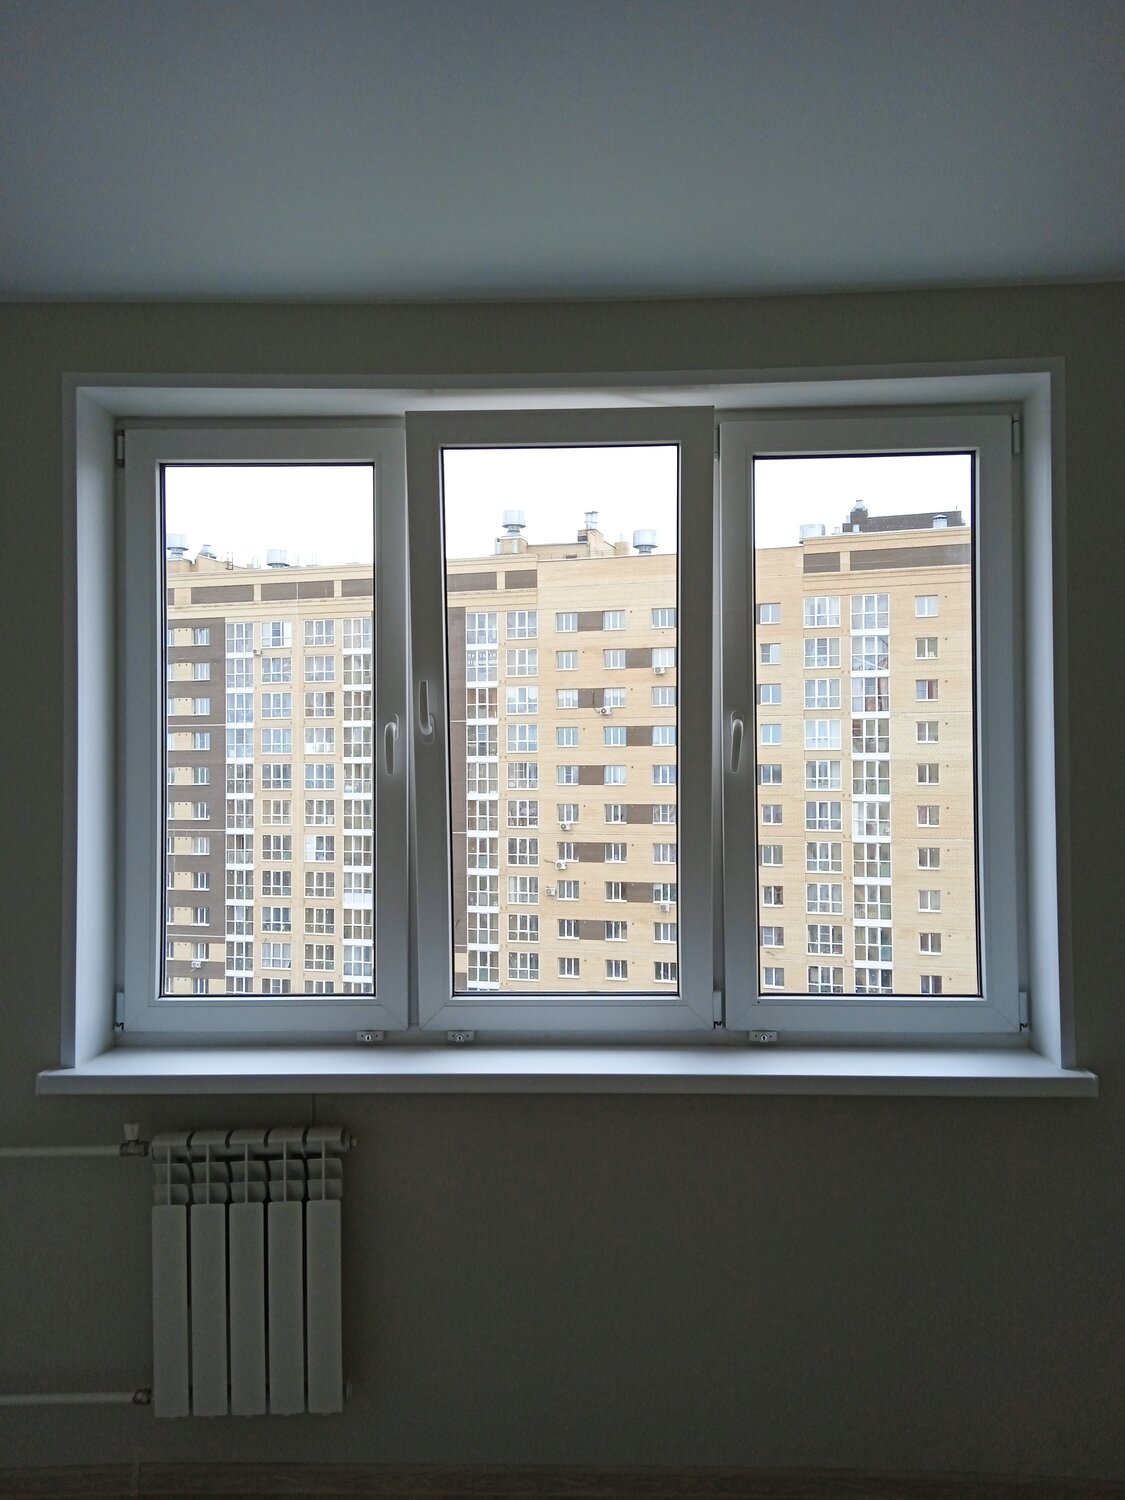 Помыть окна в Гусь-Хрустальном: 87 клинеров с отзывами и ценами на Яндекс  Услугах.